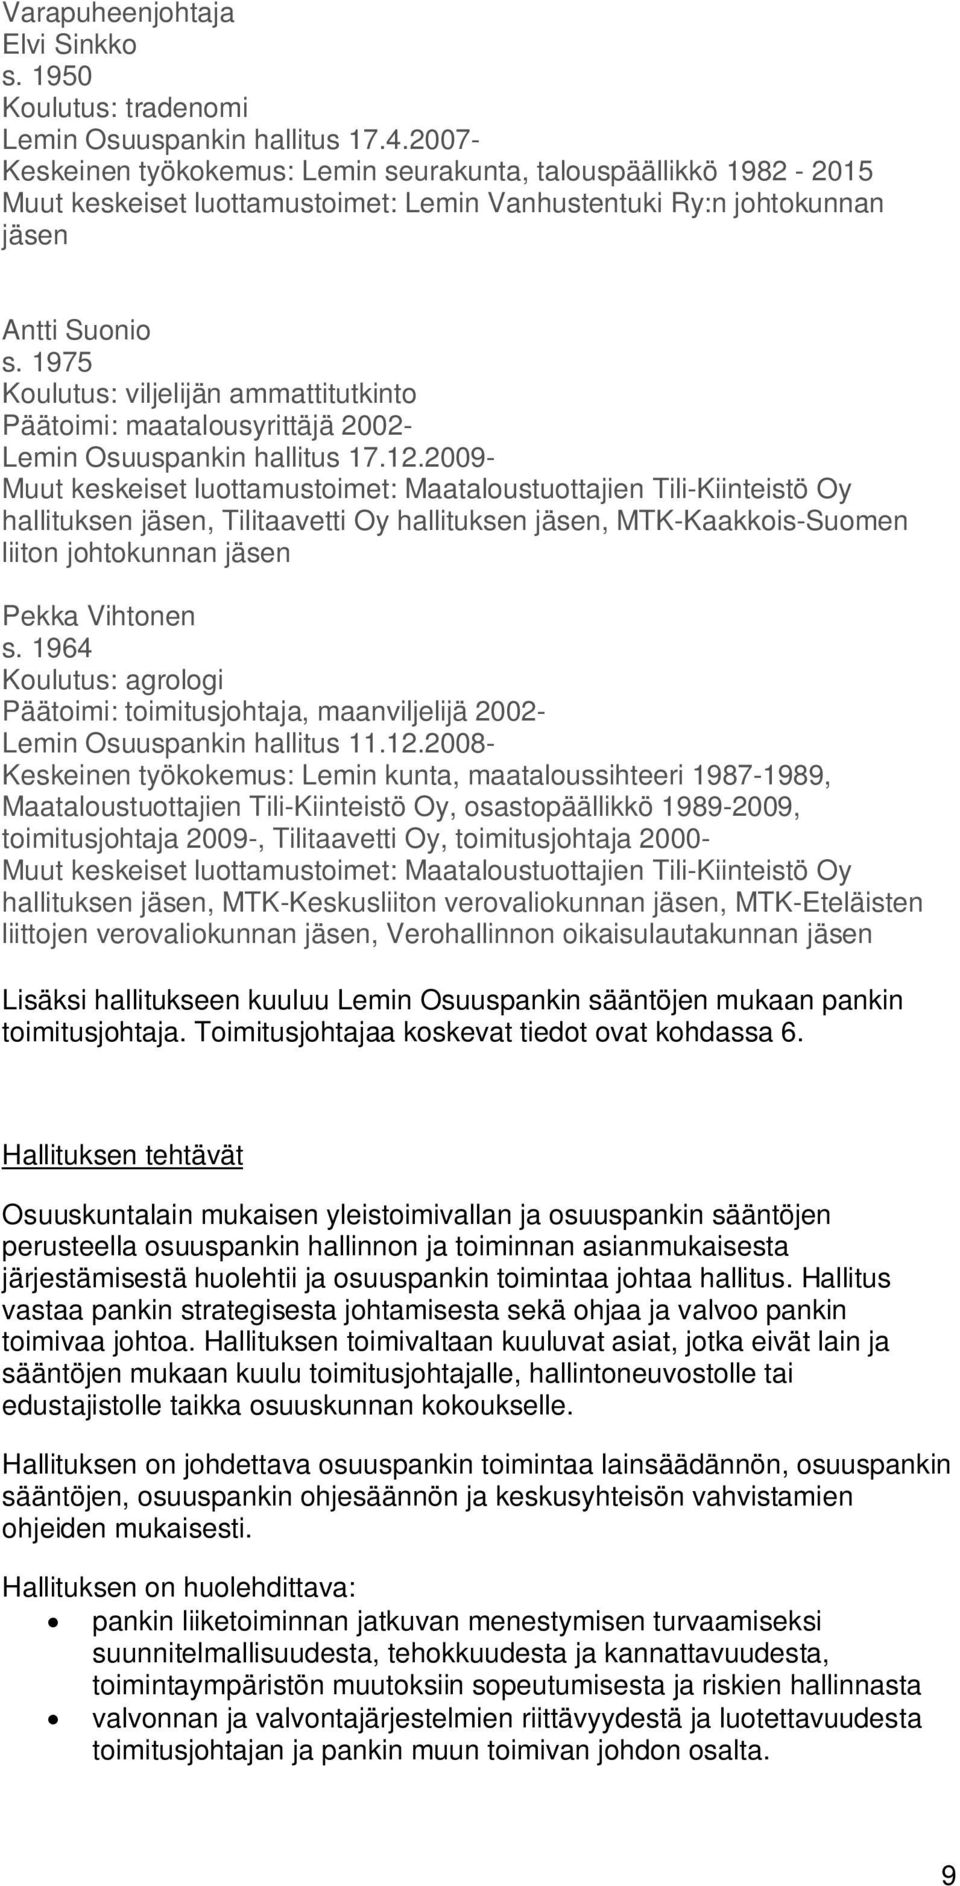 1975 Koulutus: viljelijän ammattitutkinto Päätoimi: maatalousyrittäjä 2002- Lemin Osuuspankin hallitus 17.12.